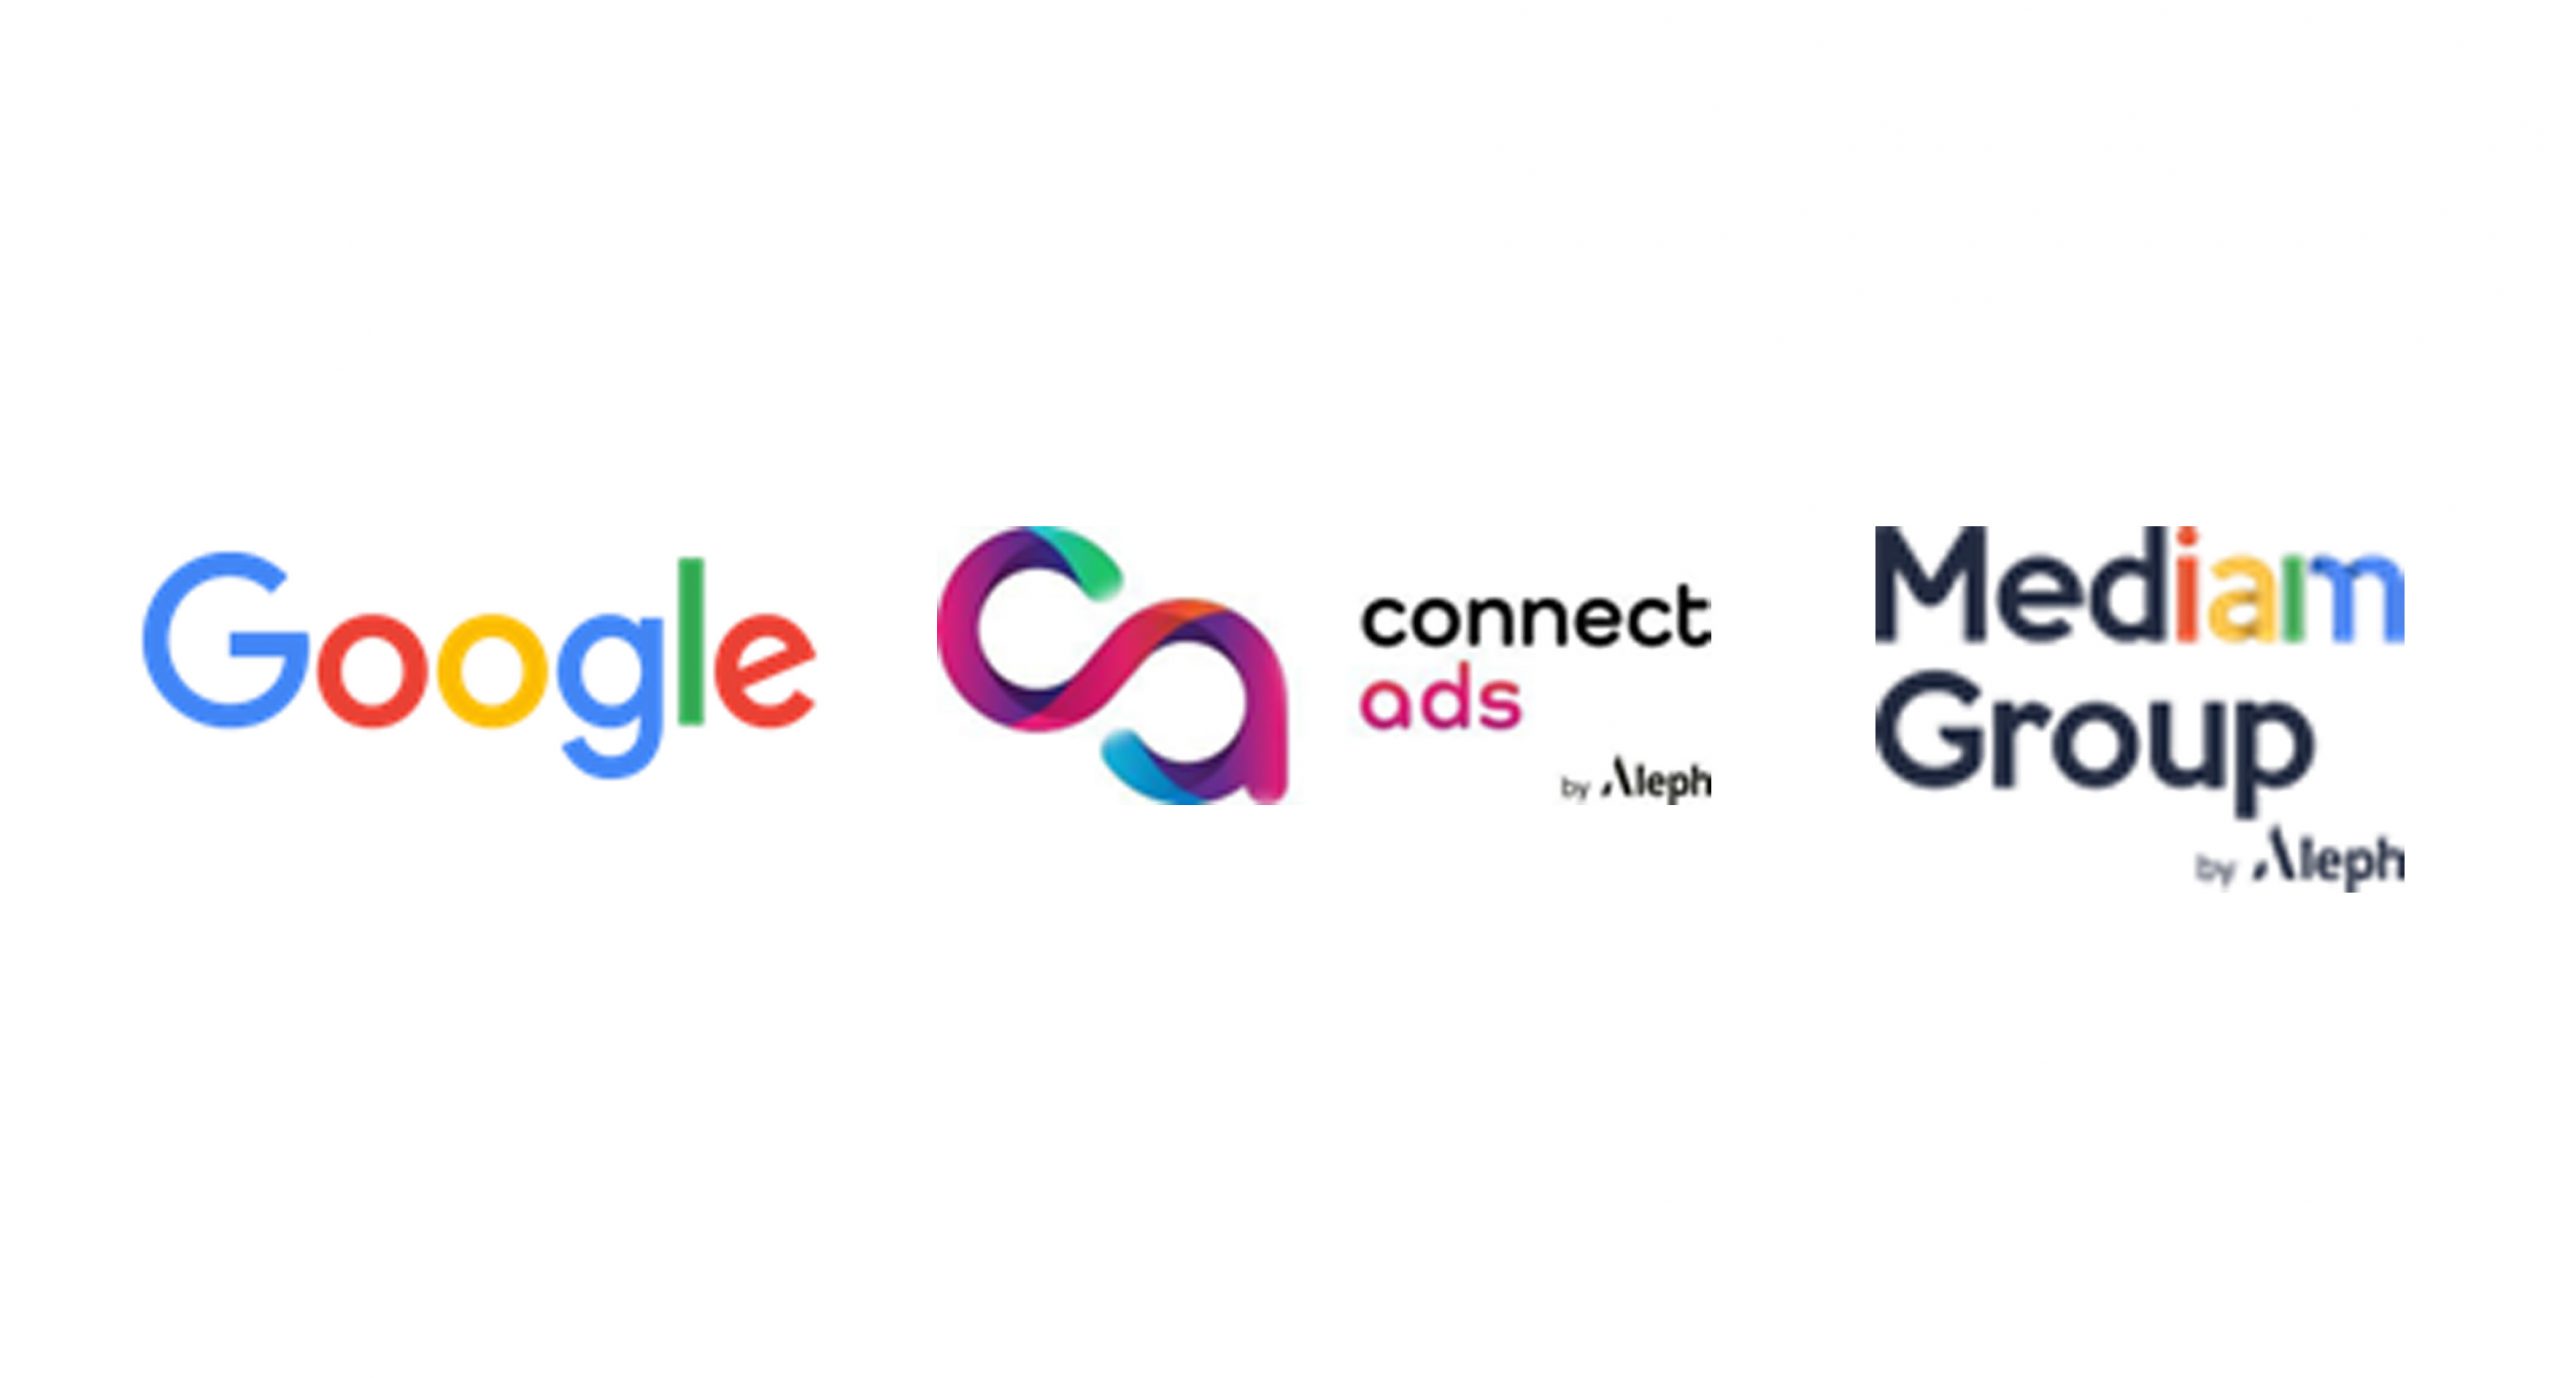 تعيين شركة Connect Ads by Aleph كوكيل رسمي ومعتمد لـ Google في المغرب والعراق